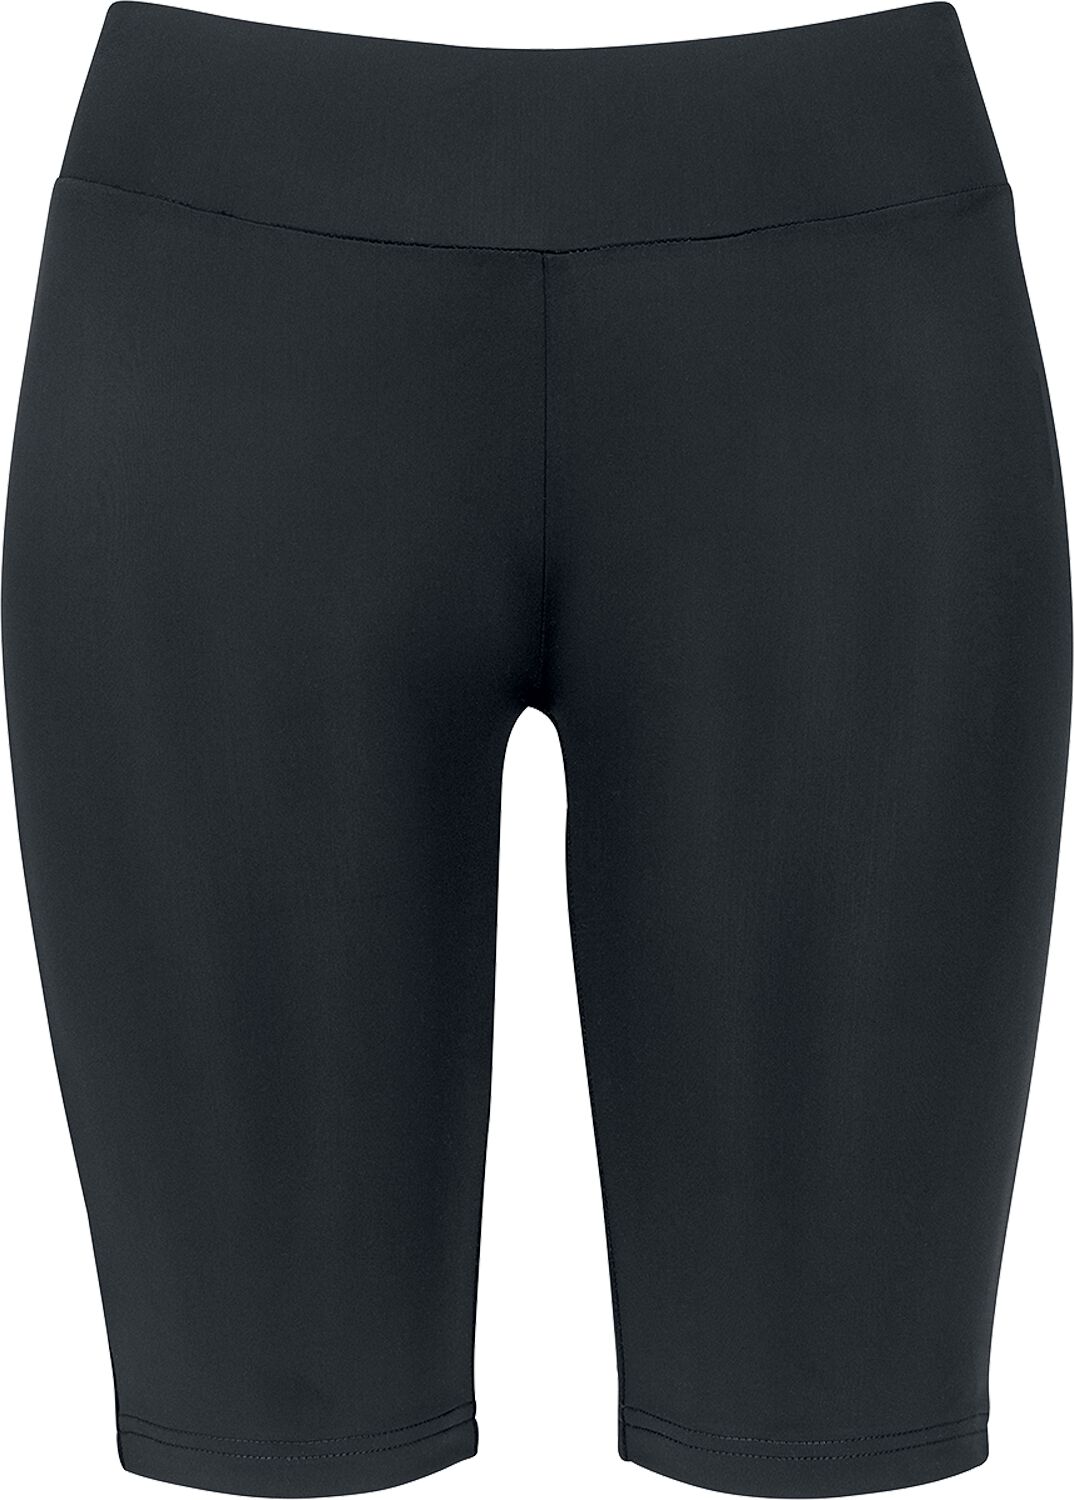 Urban Classics Short - Ladies Cycle Shorts - XS bis XL - für Damen - Größe S - schwarz